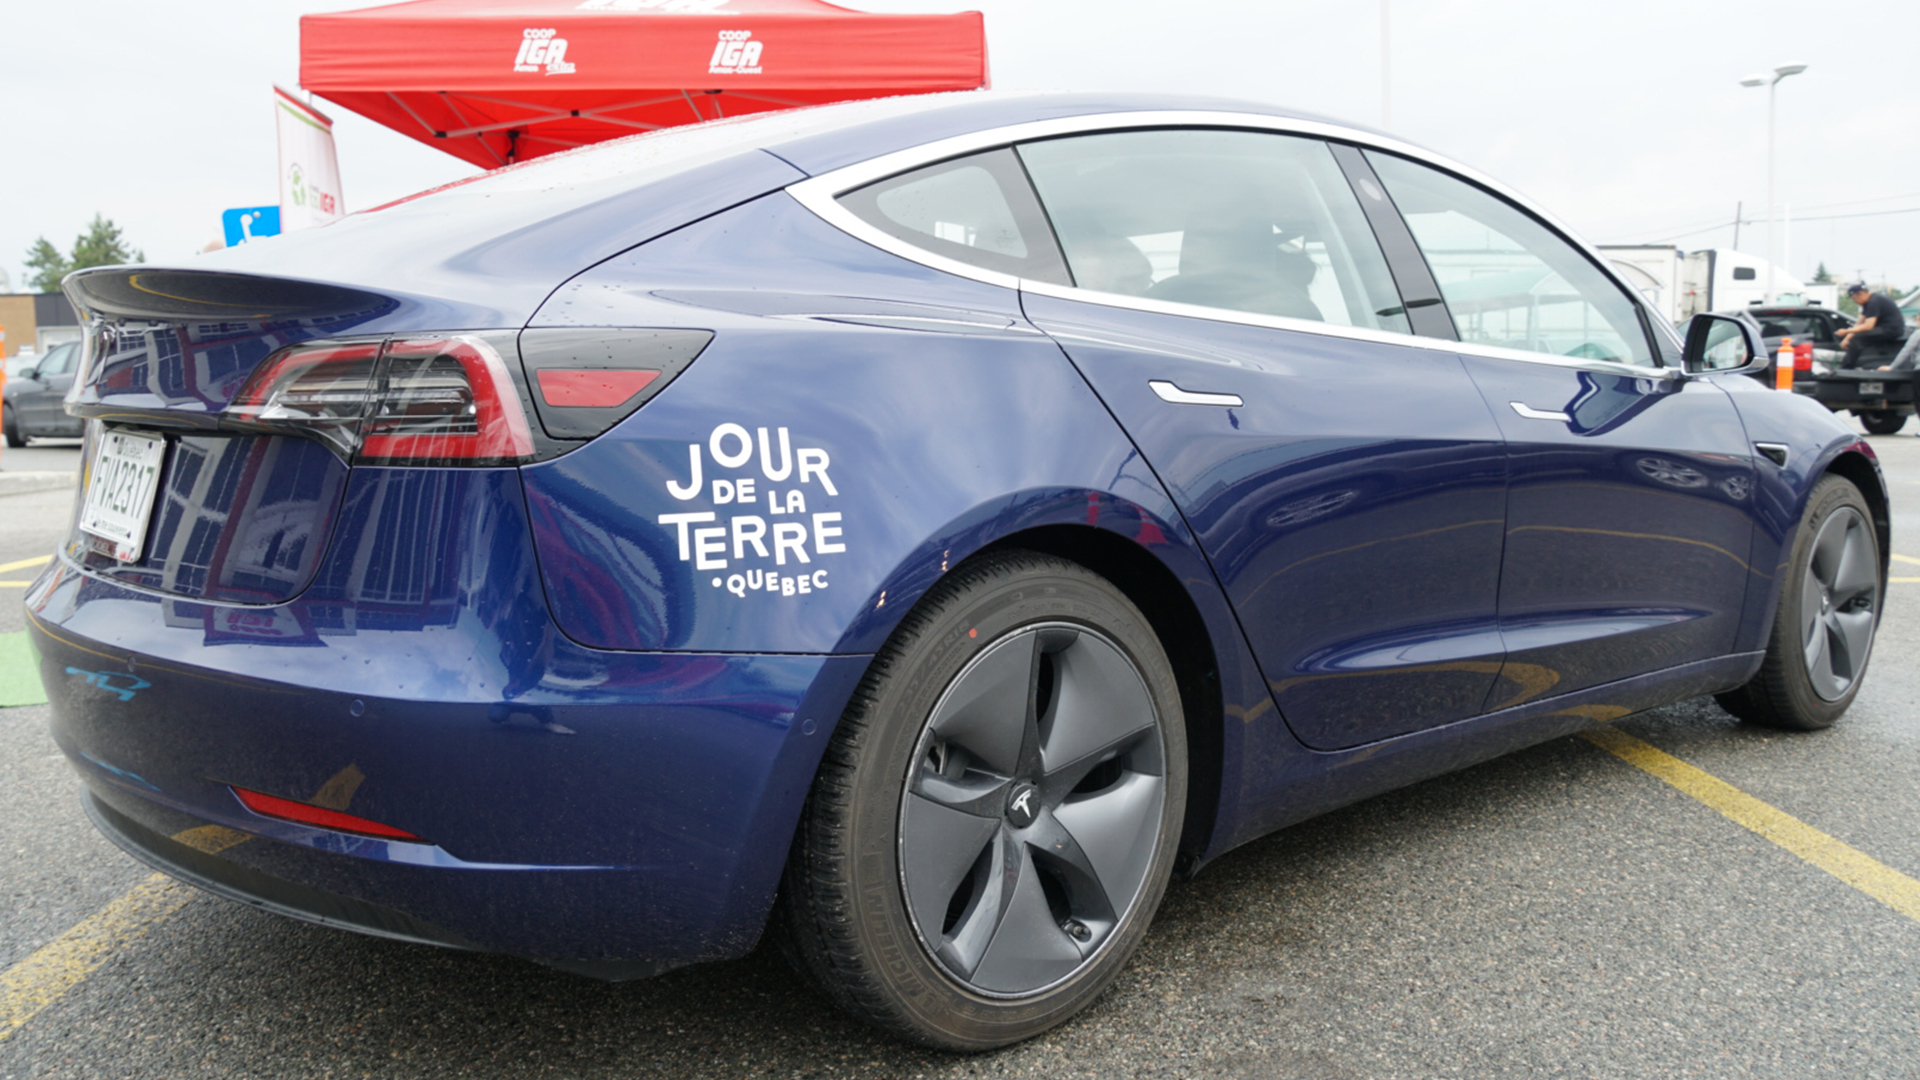 https://jourdelaterre.org/wp-content/uploads/2018/07/Road-Trip-E%CC%81lectrique-a%CC%80-Bord-de-la-Tesla-Model-3-article-2-cover.jpg